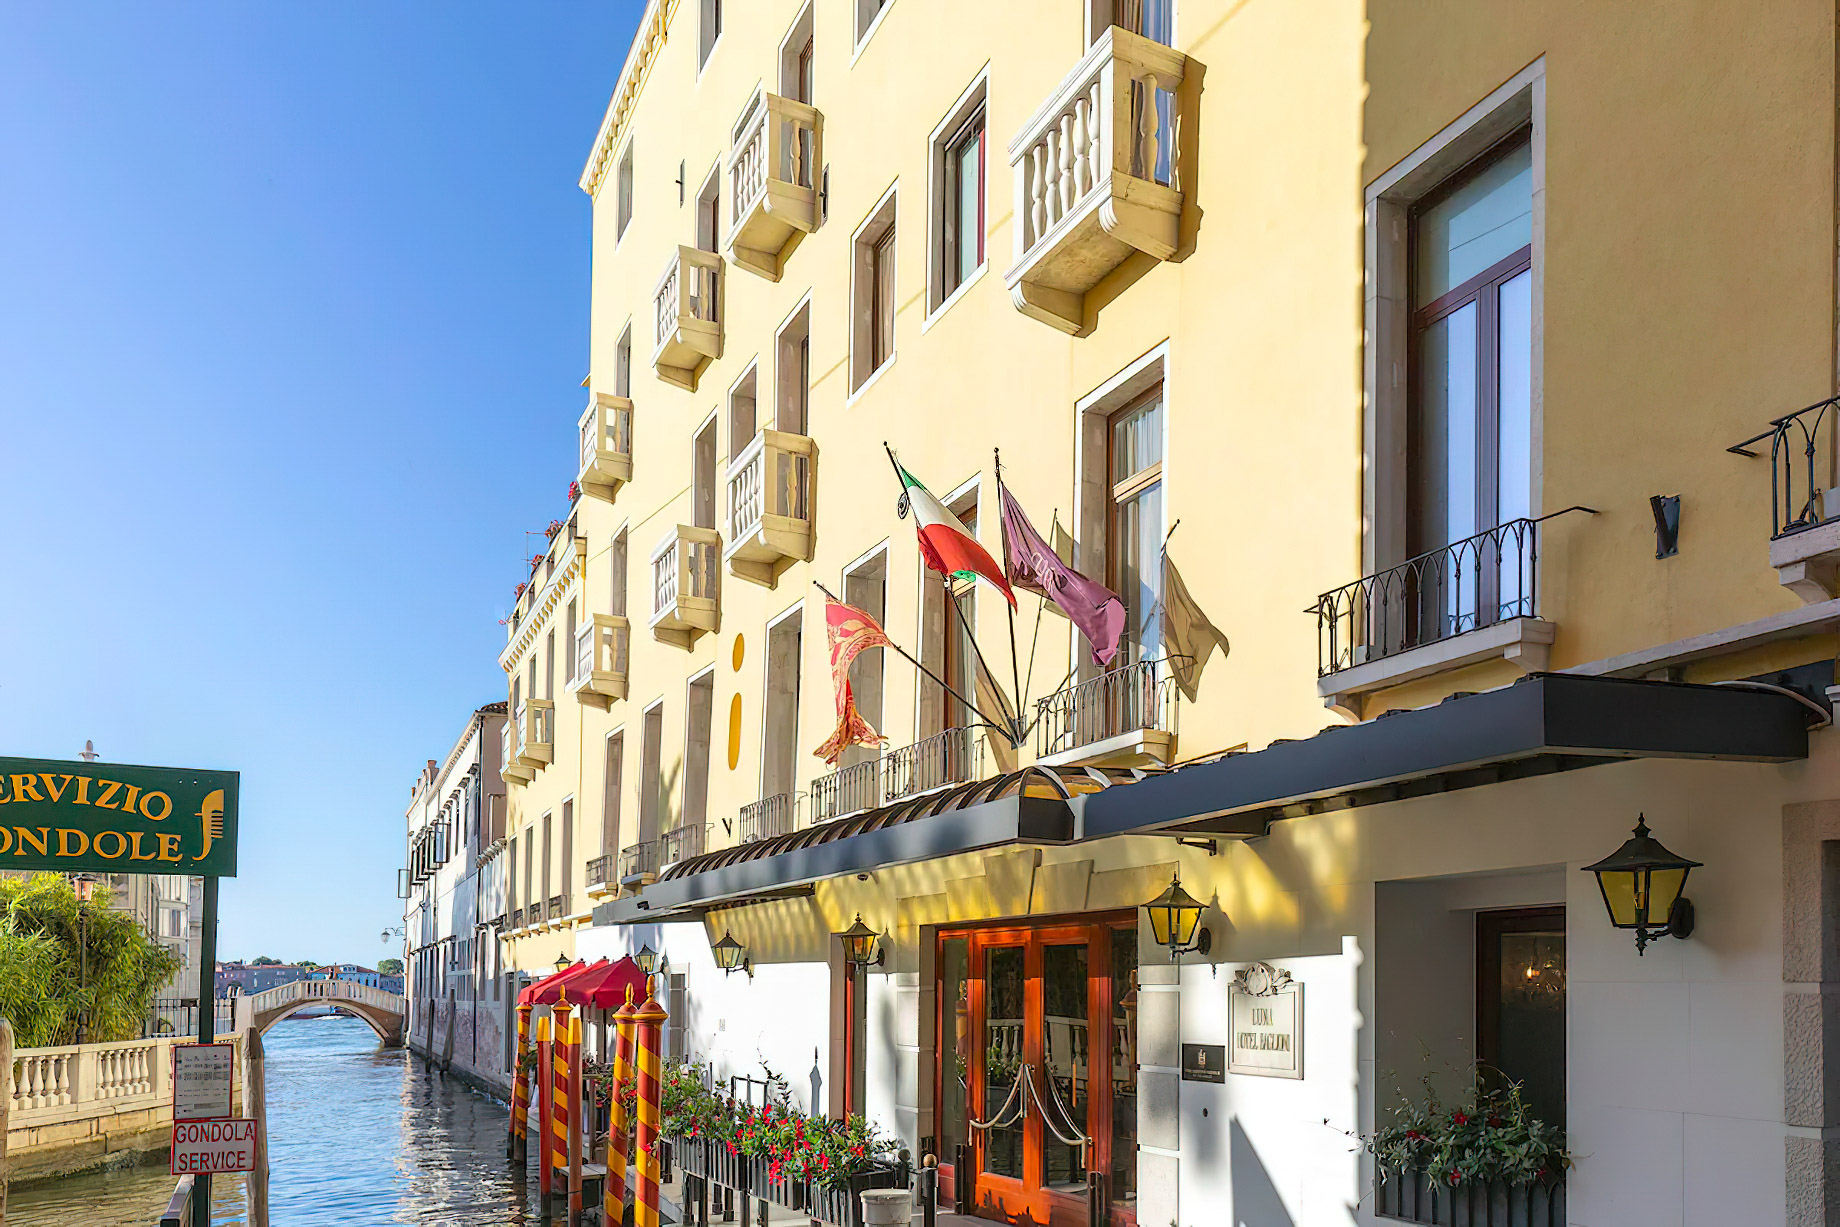 Baglioni Hotel Luna, Venezia – Venice, Italy – Arrival